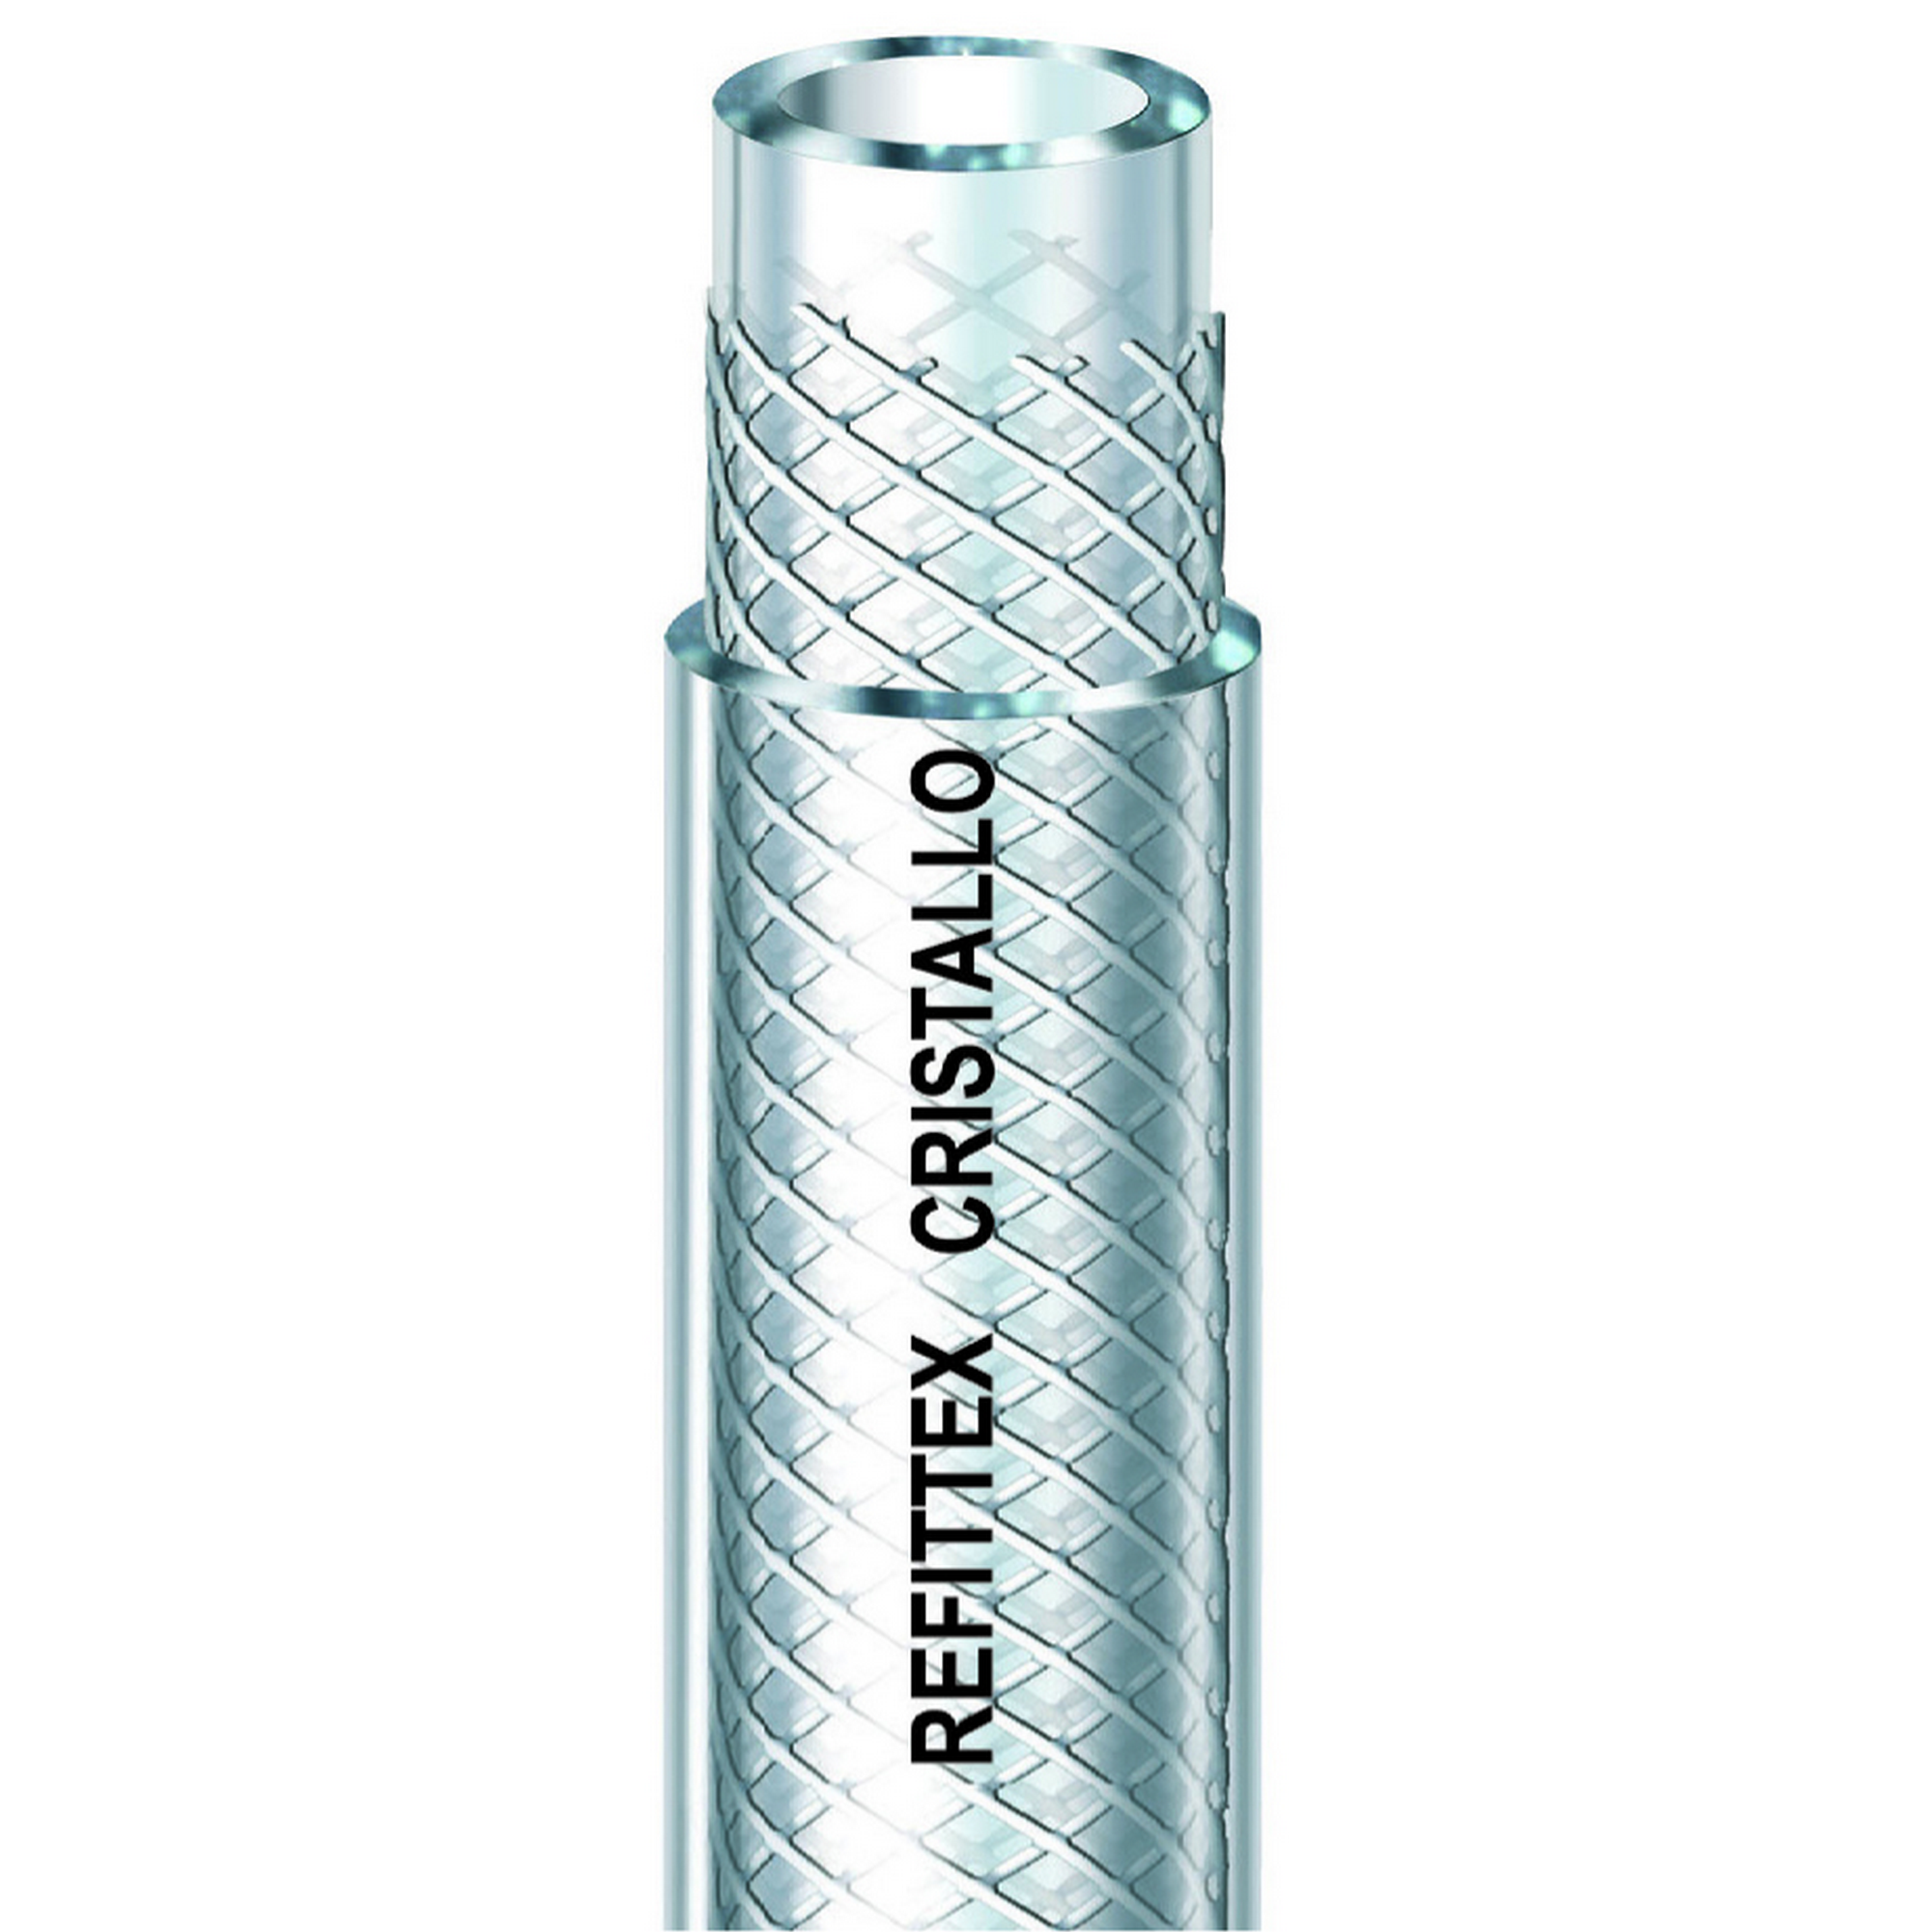 Gewebeschlauch 'Refittex Cristallo' transparent Ø 6 mm (1/4") + product picture